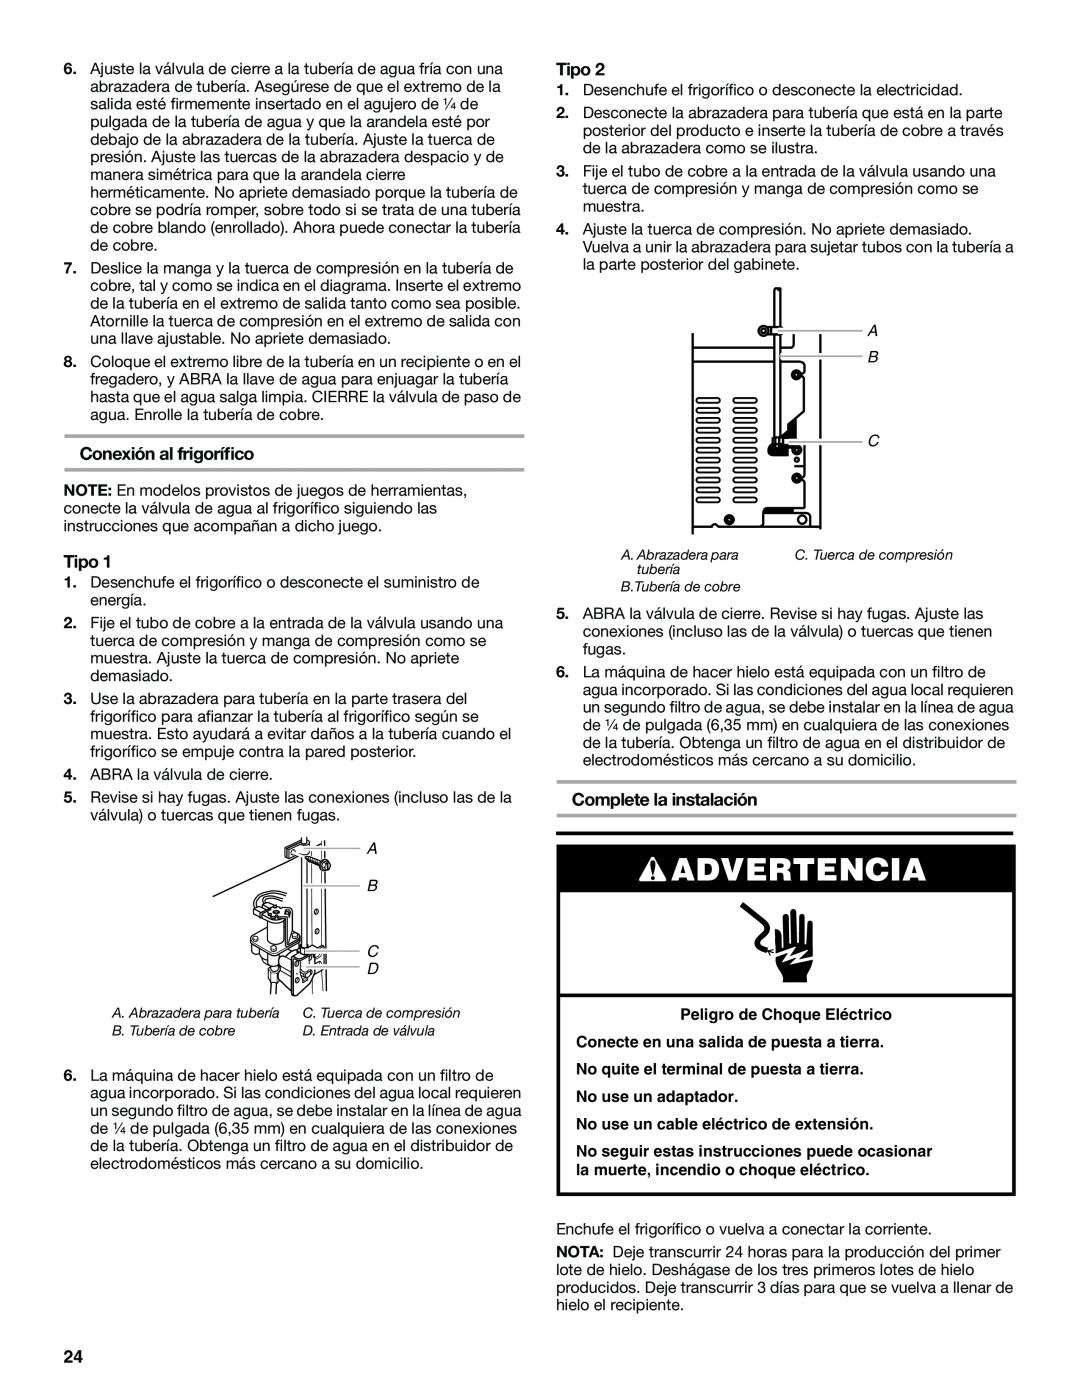 Whirlpool Refrigerator, 338 Conexión al frigoríﬁco, Tipo, Complete la instalación, Advertencia, A B C, No use un adaptador 